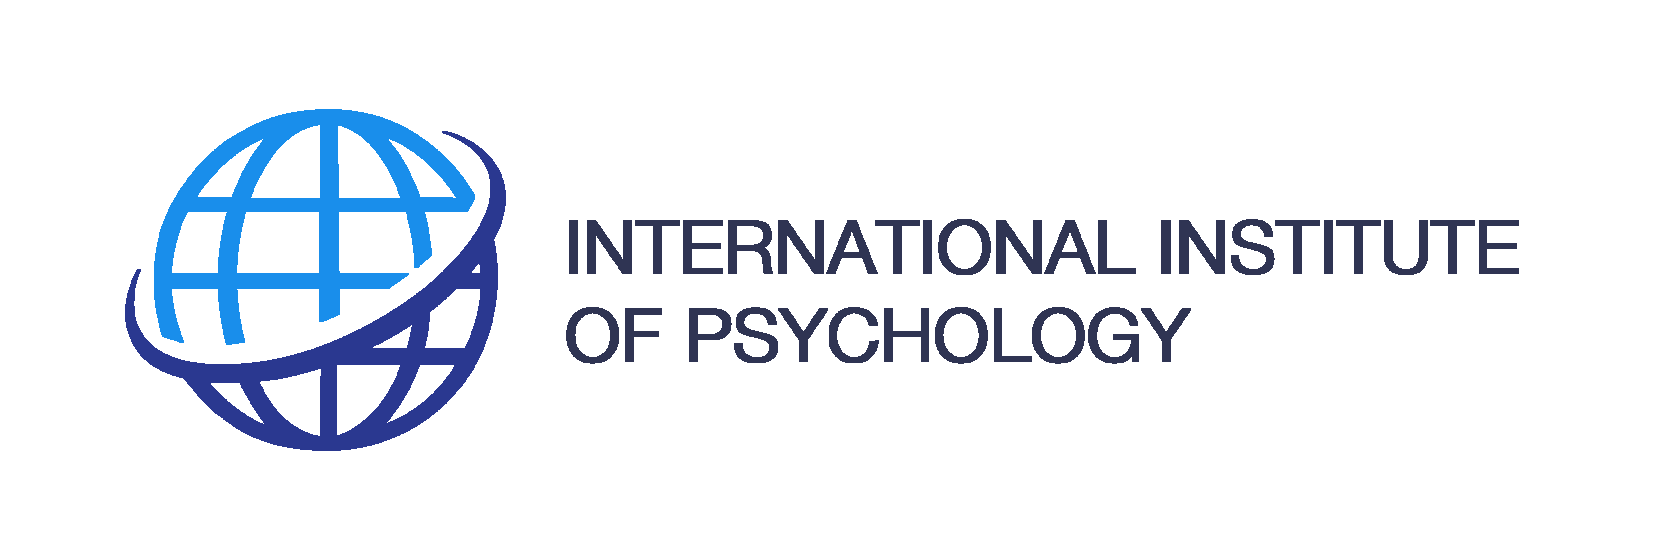 міжнародний інститут психології